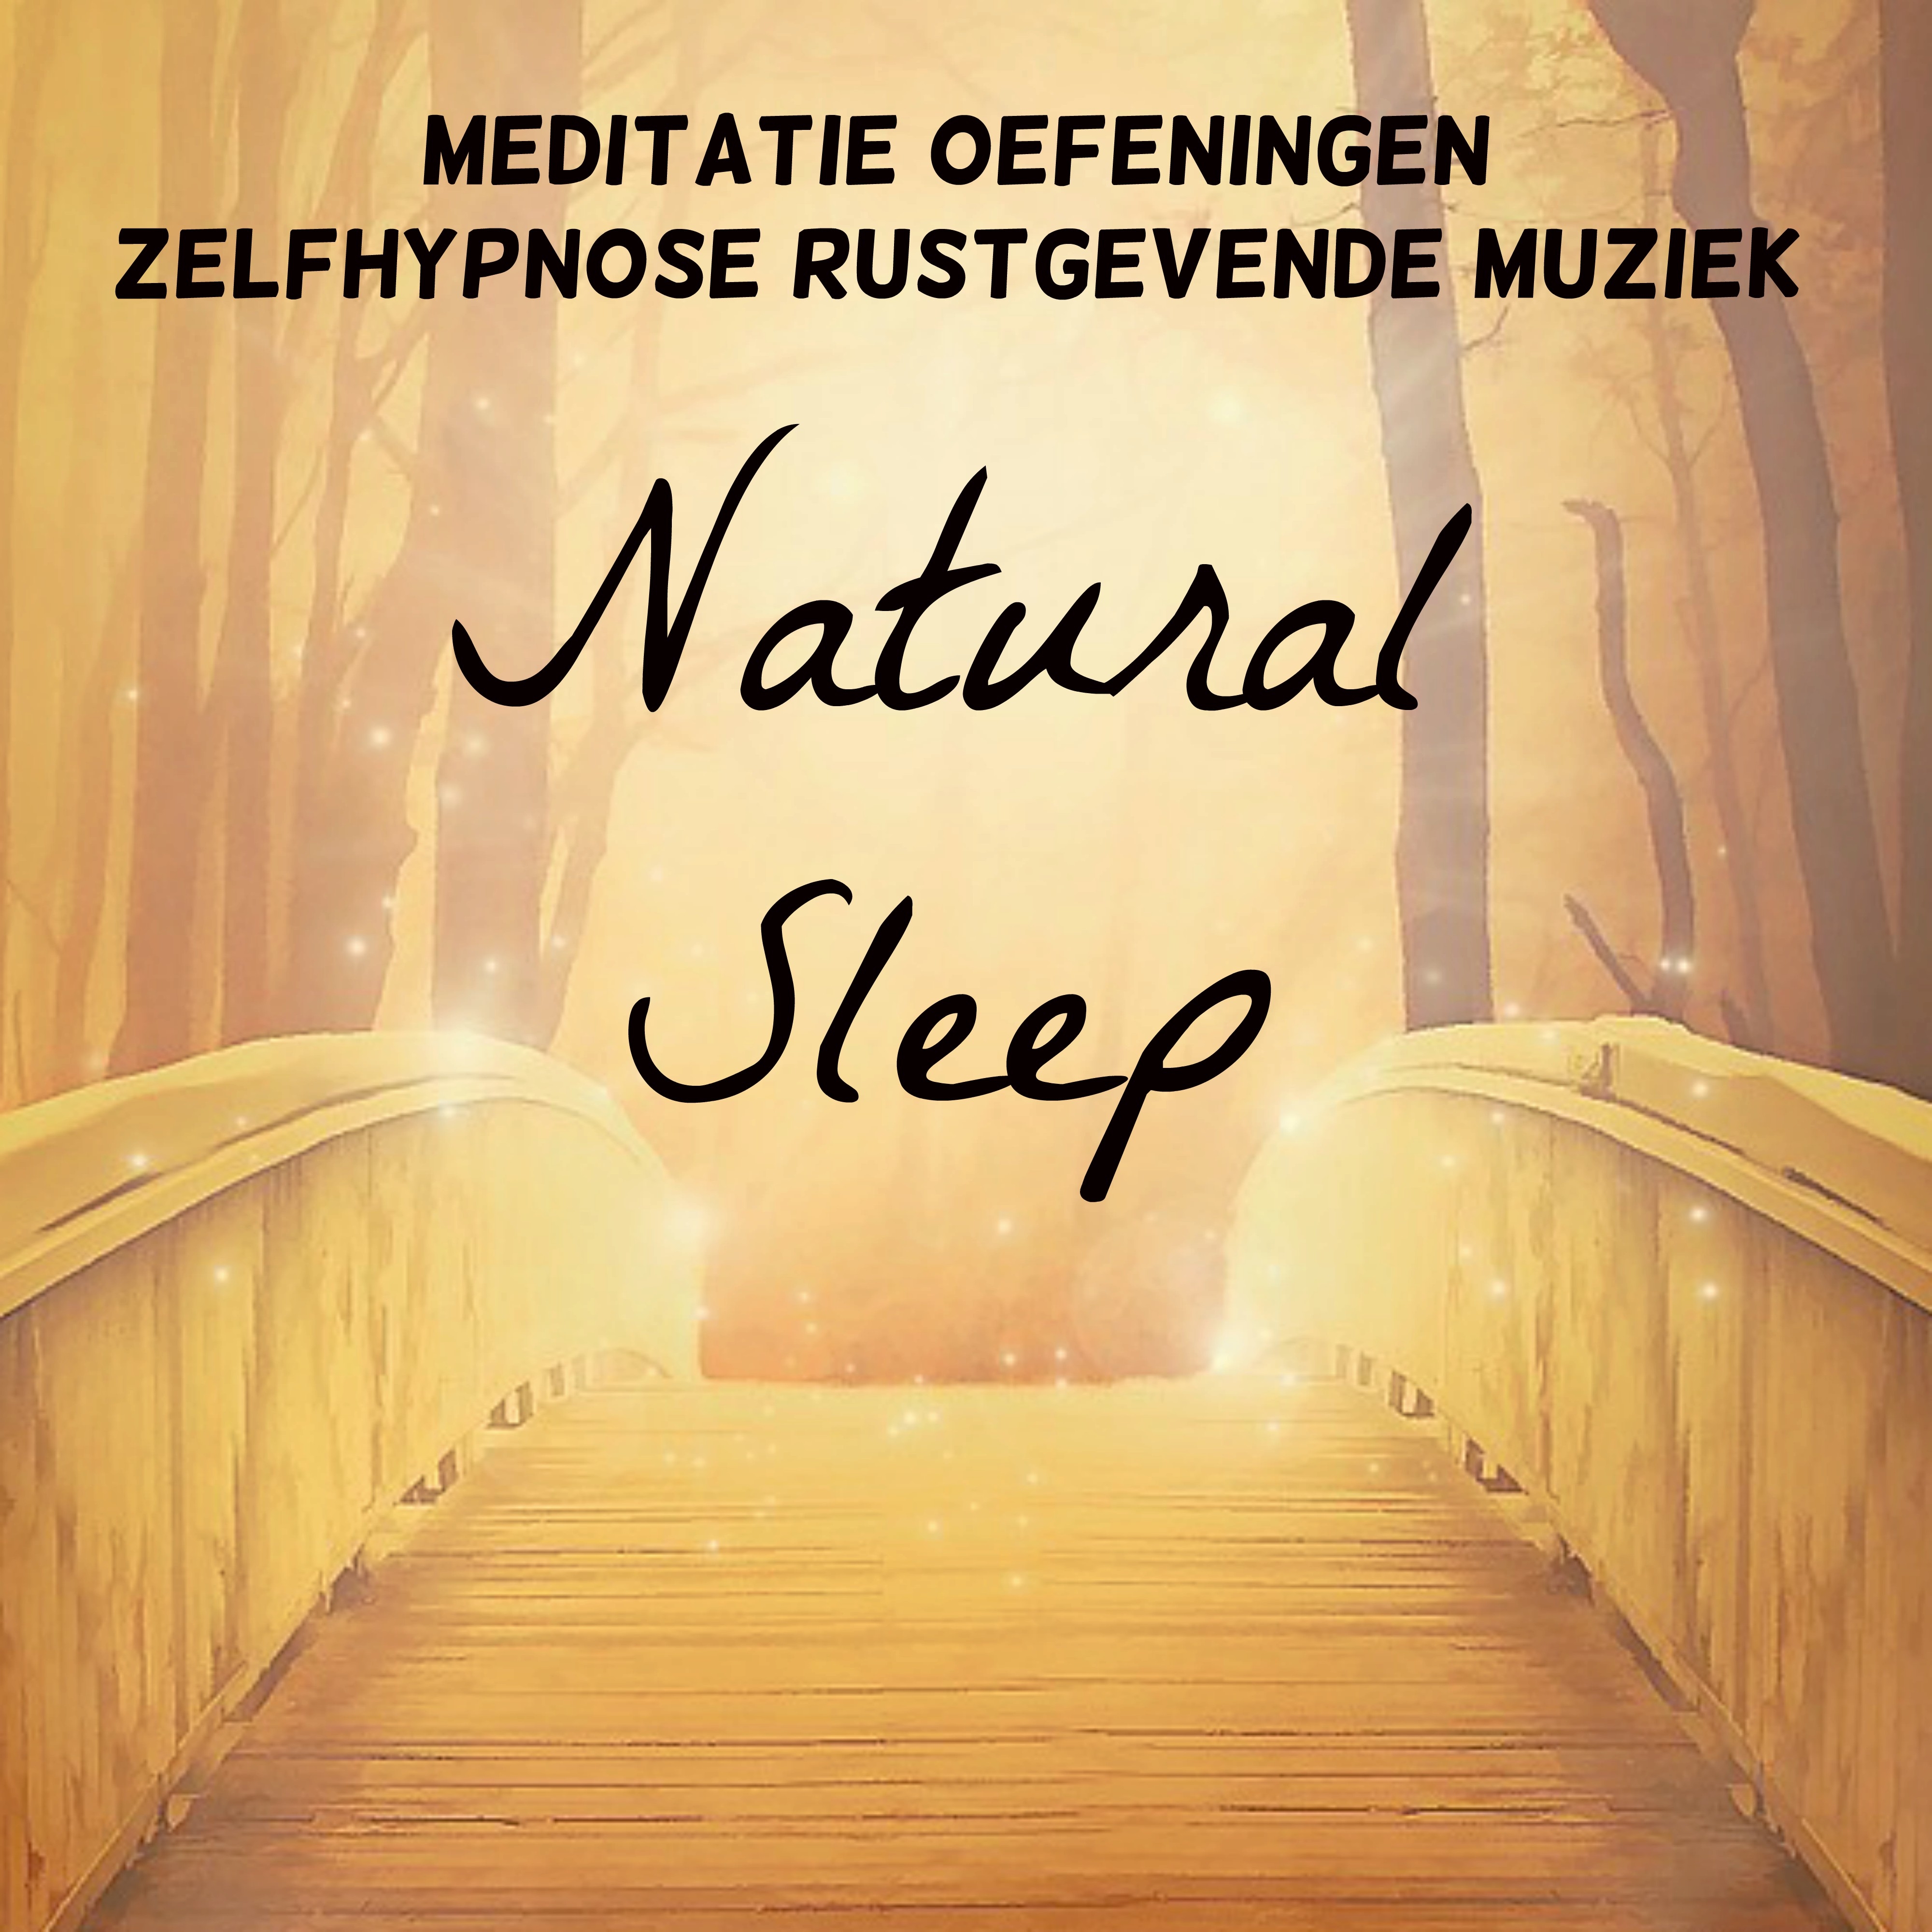 Natural Sleep - Meditatie Oefeningen Zelfhypnose Rustgevende Muziek voor Chakra Opleiding Spirituele Genezing Yoga Massage Therapie met New Age Natuur Instrumentale Geluiden